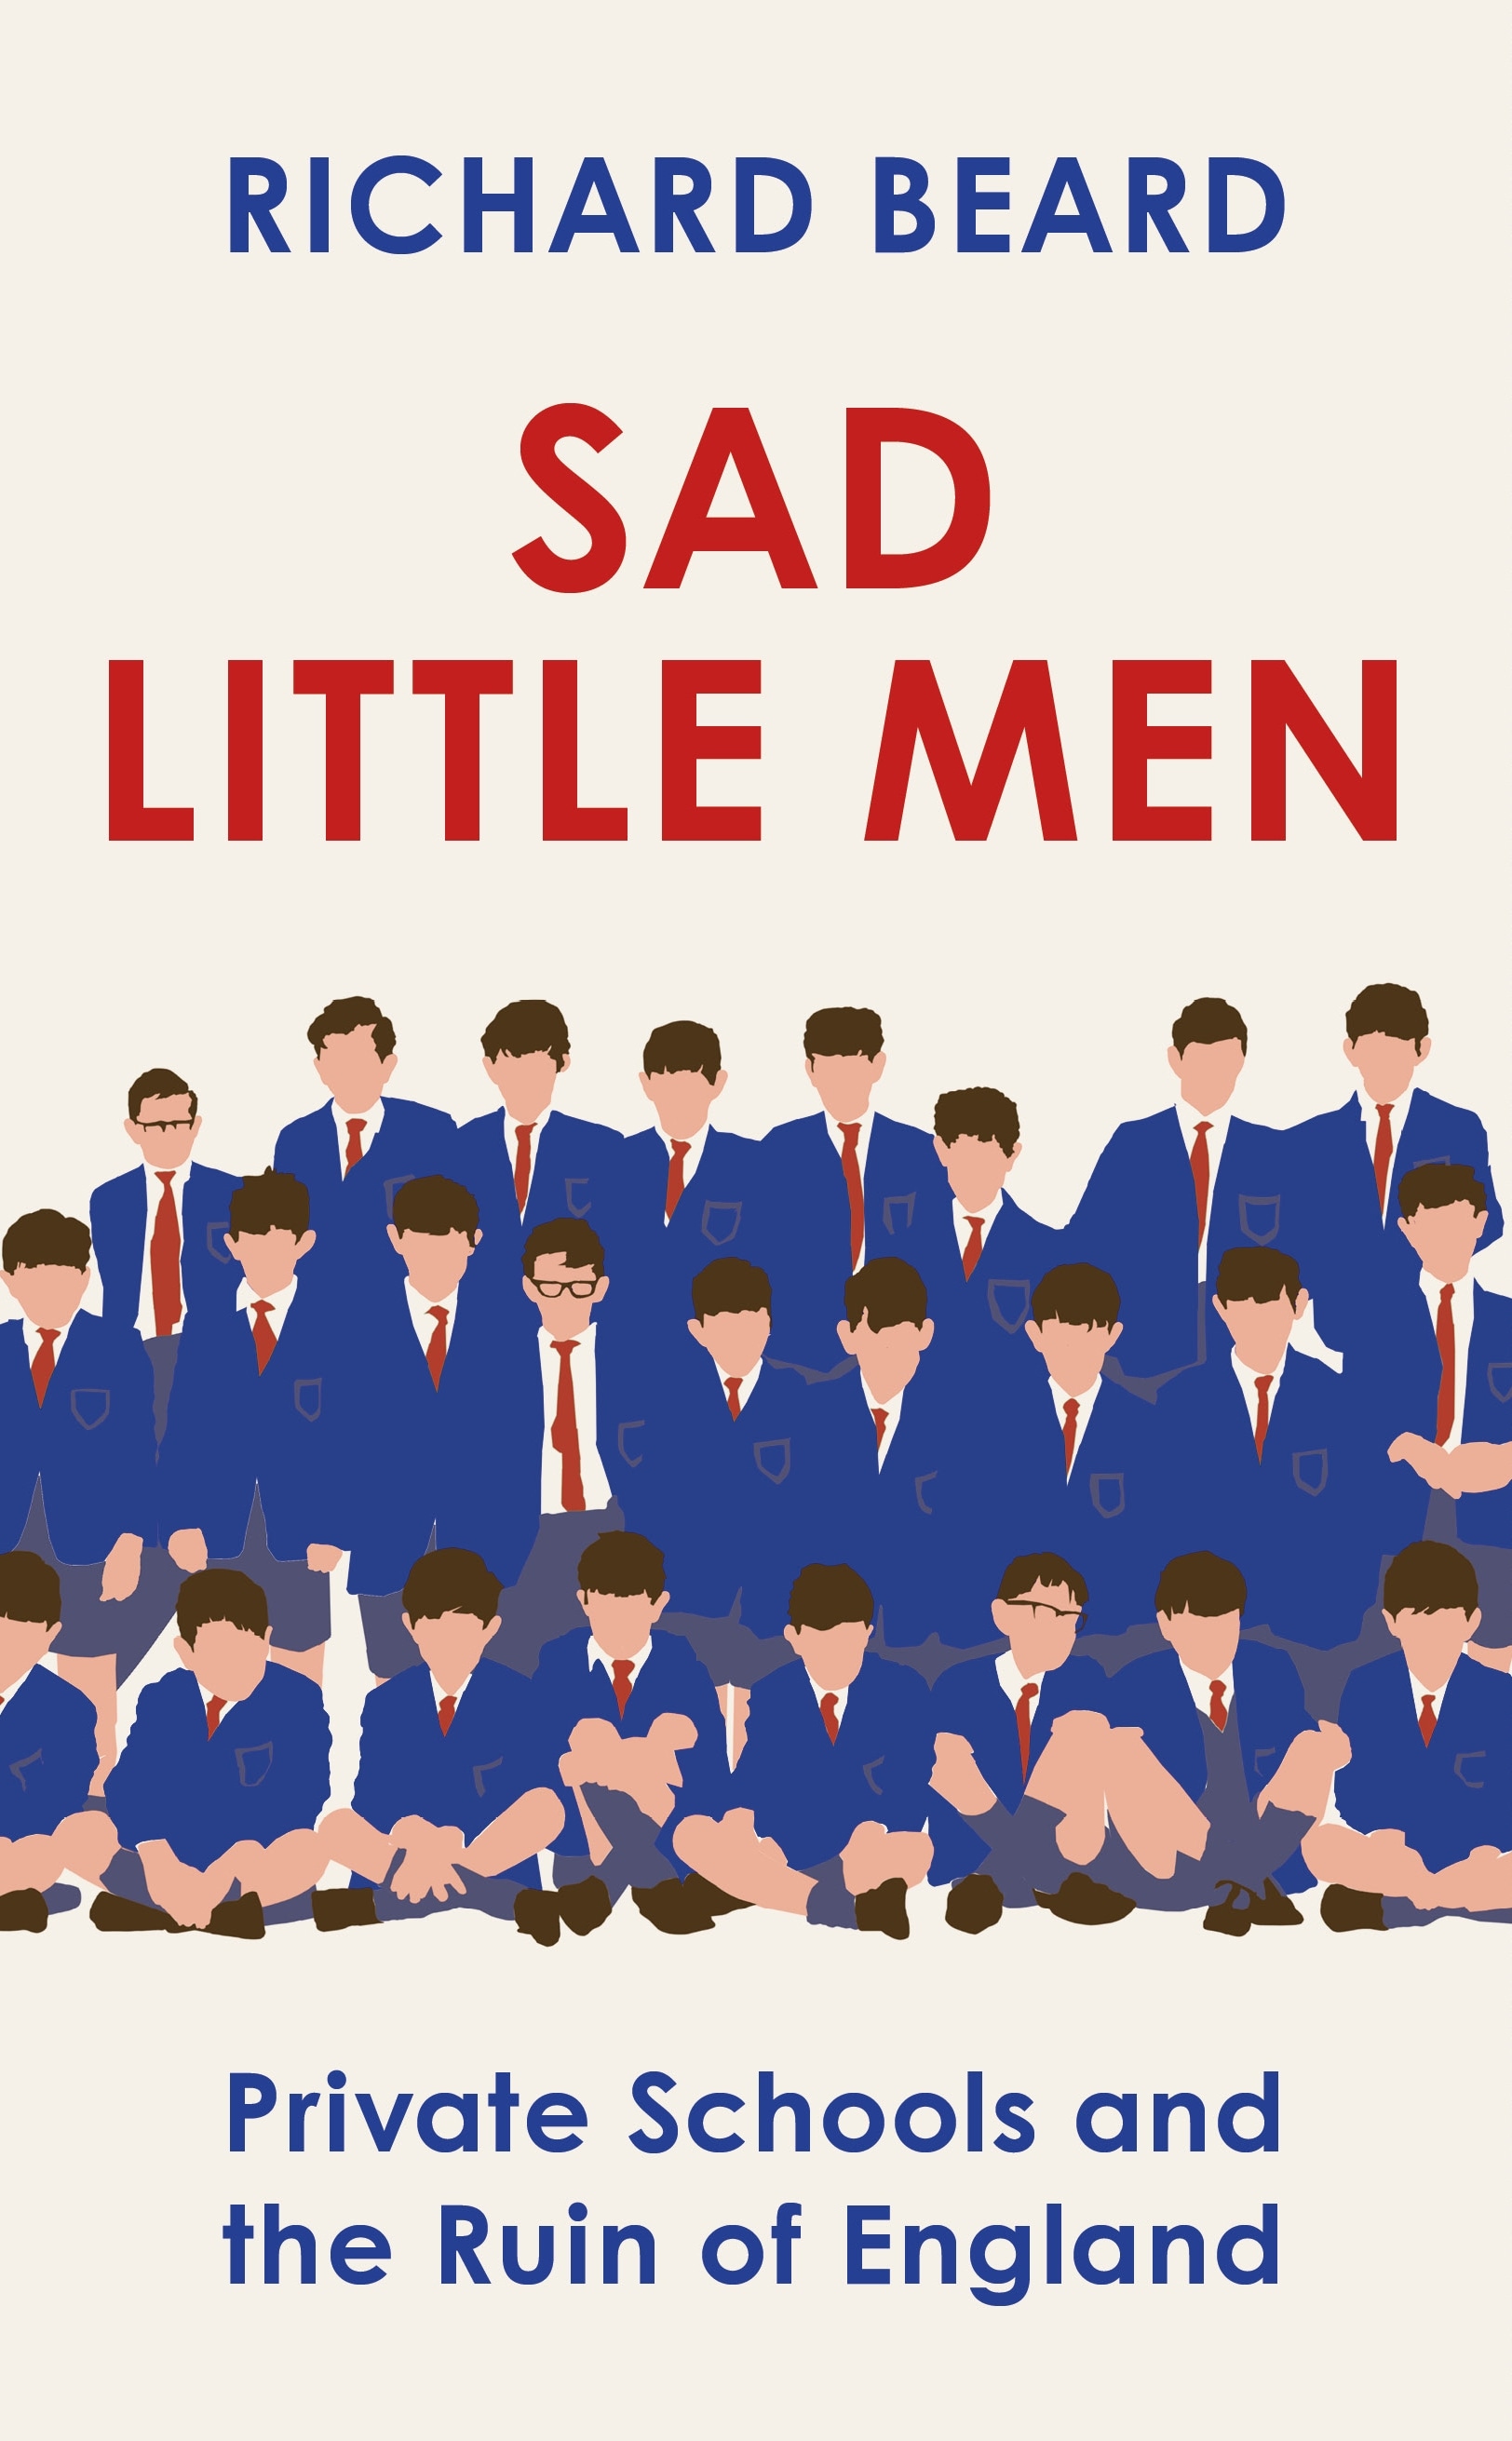 Book “Sad Little Men” by Richard Beard — August 26, 2021